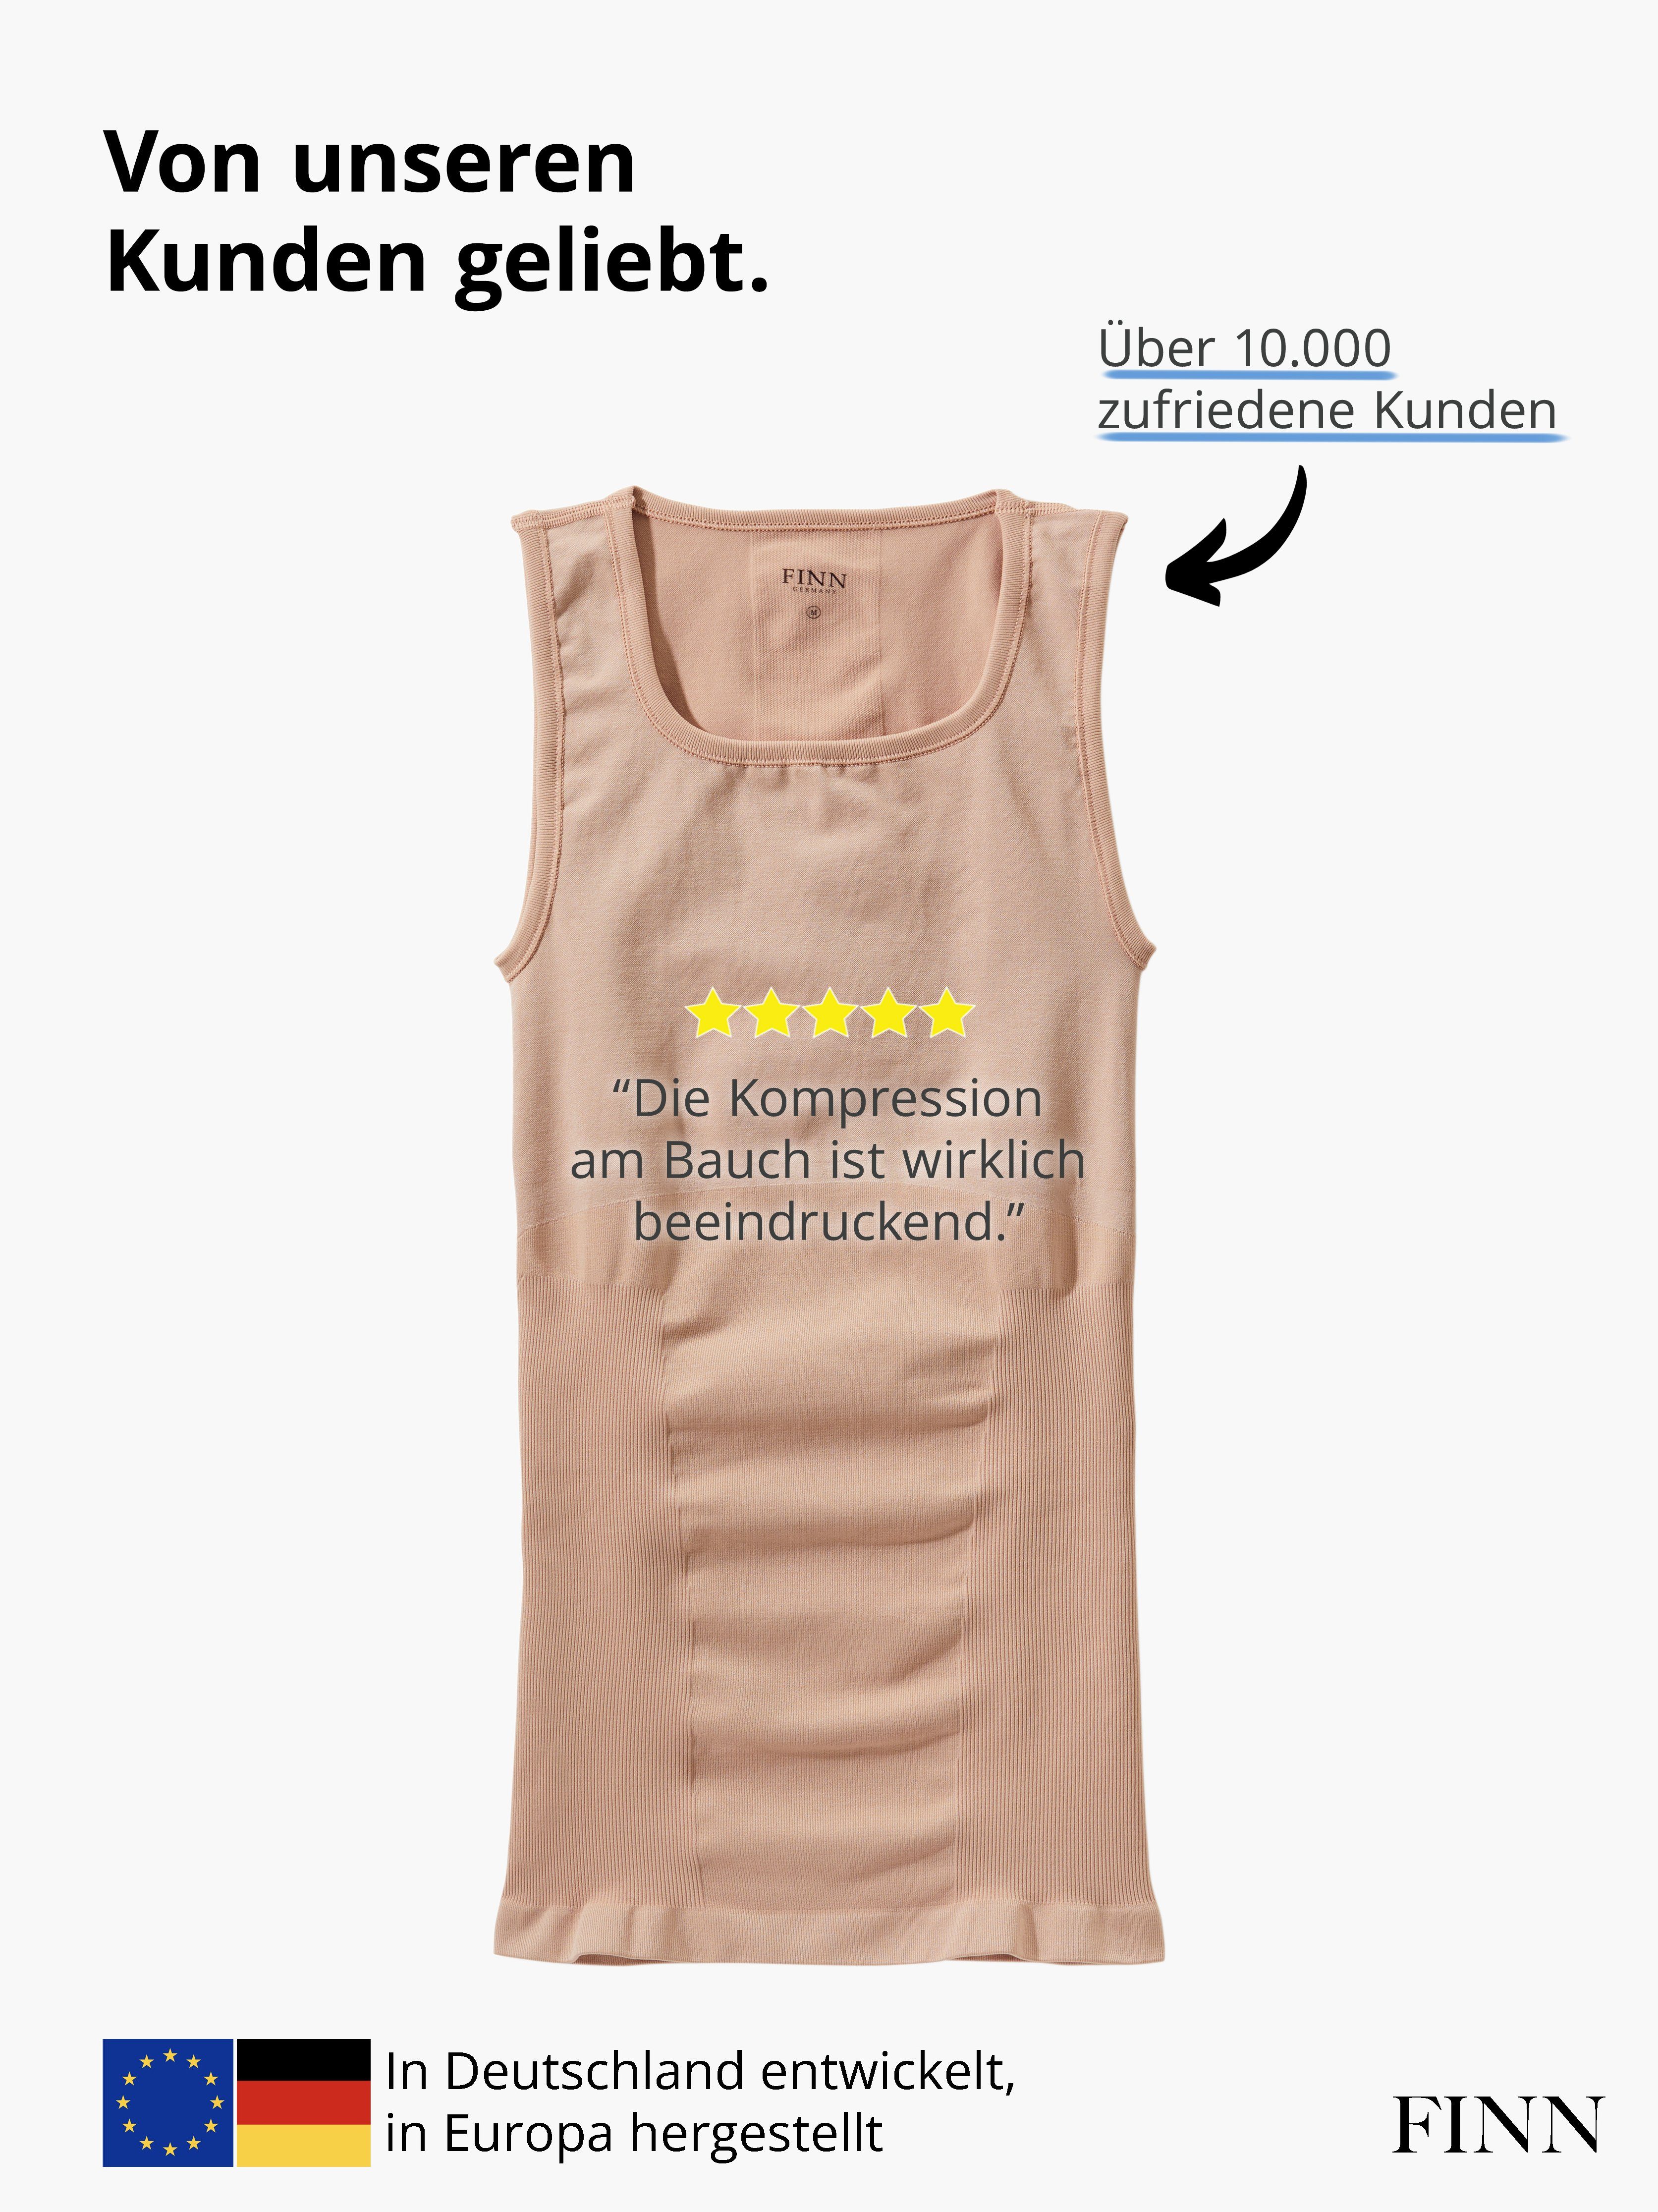 FINN Design Shapinghemd Herren Body-Shaper für Seamless Männer Nähte Starker Kompressions-Unterhemd Light-Beige ohne